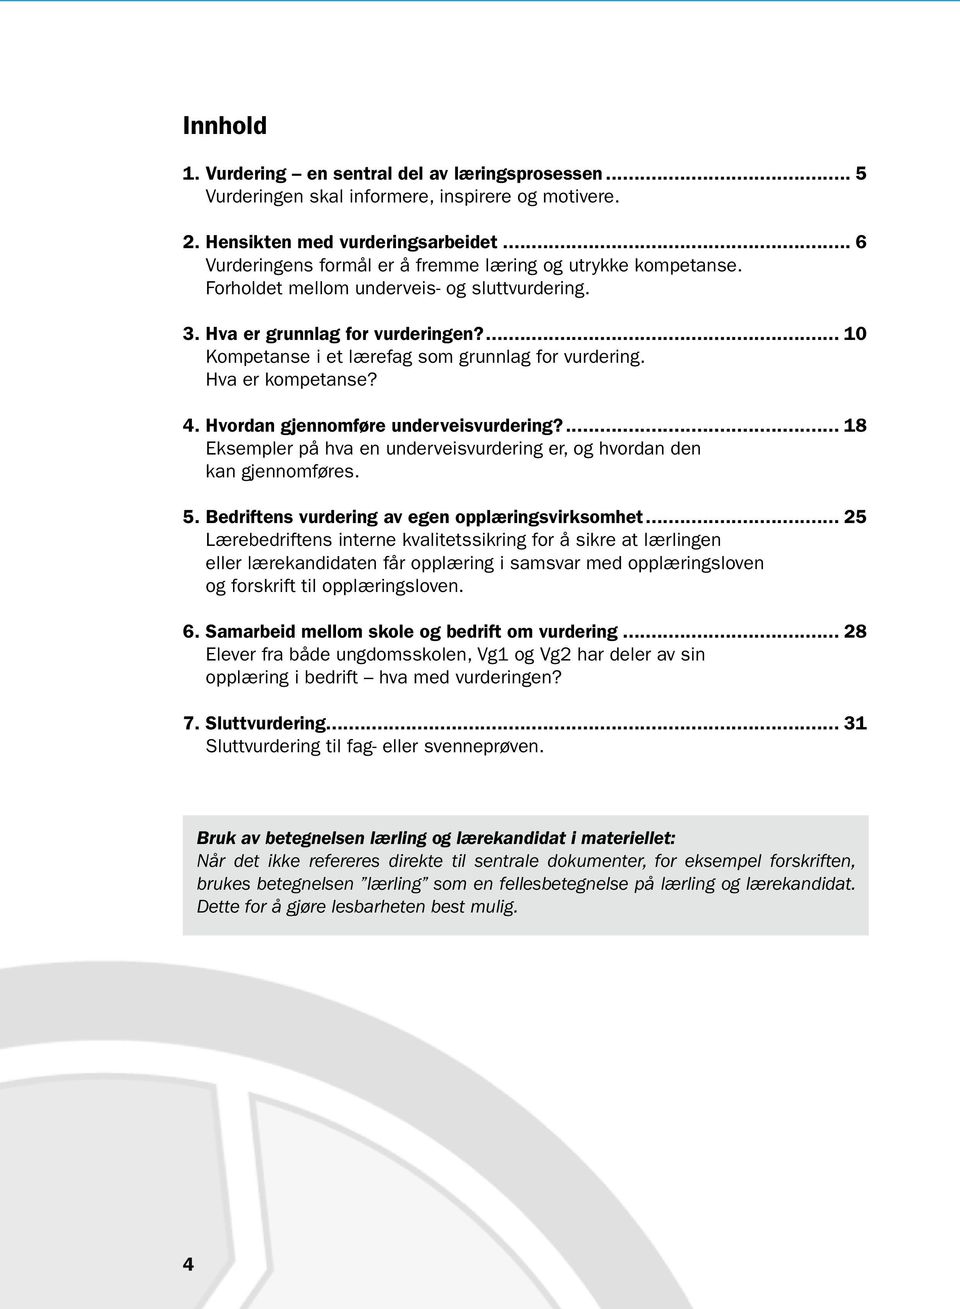 ... 10 Kompetanse i et lærefag som grunnlag for vurdering. Hva er kompetanse? 4. Hvordan gjennomføre underveisvurdering?... 18 Eksempler på hva en underveisvurdering er, og hvordan den kan gjennomføres.